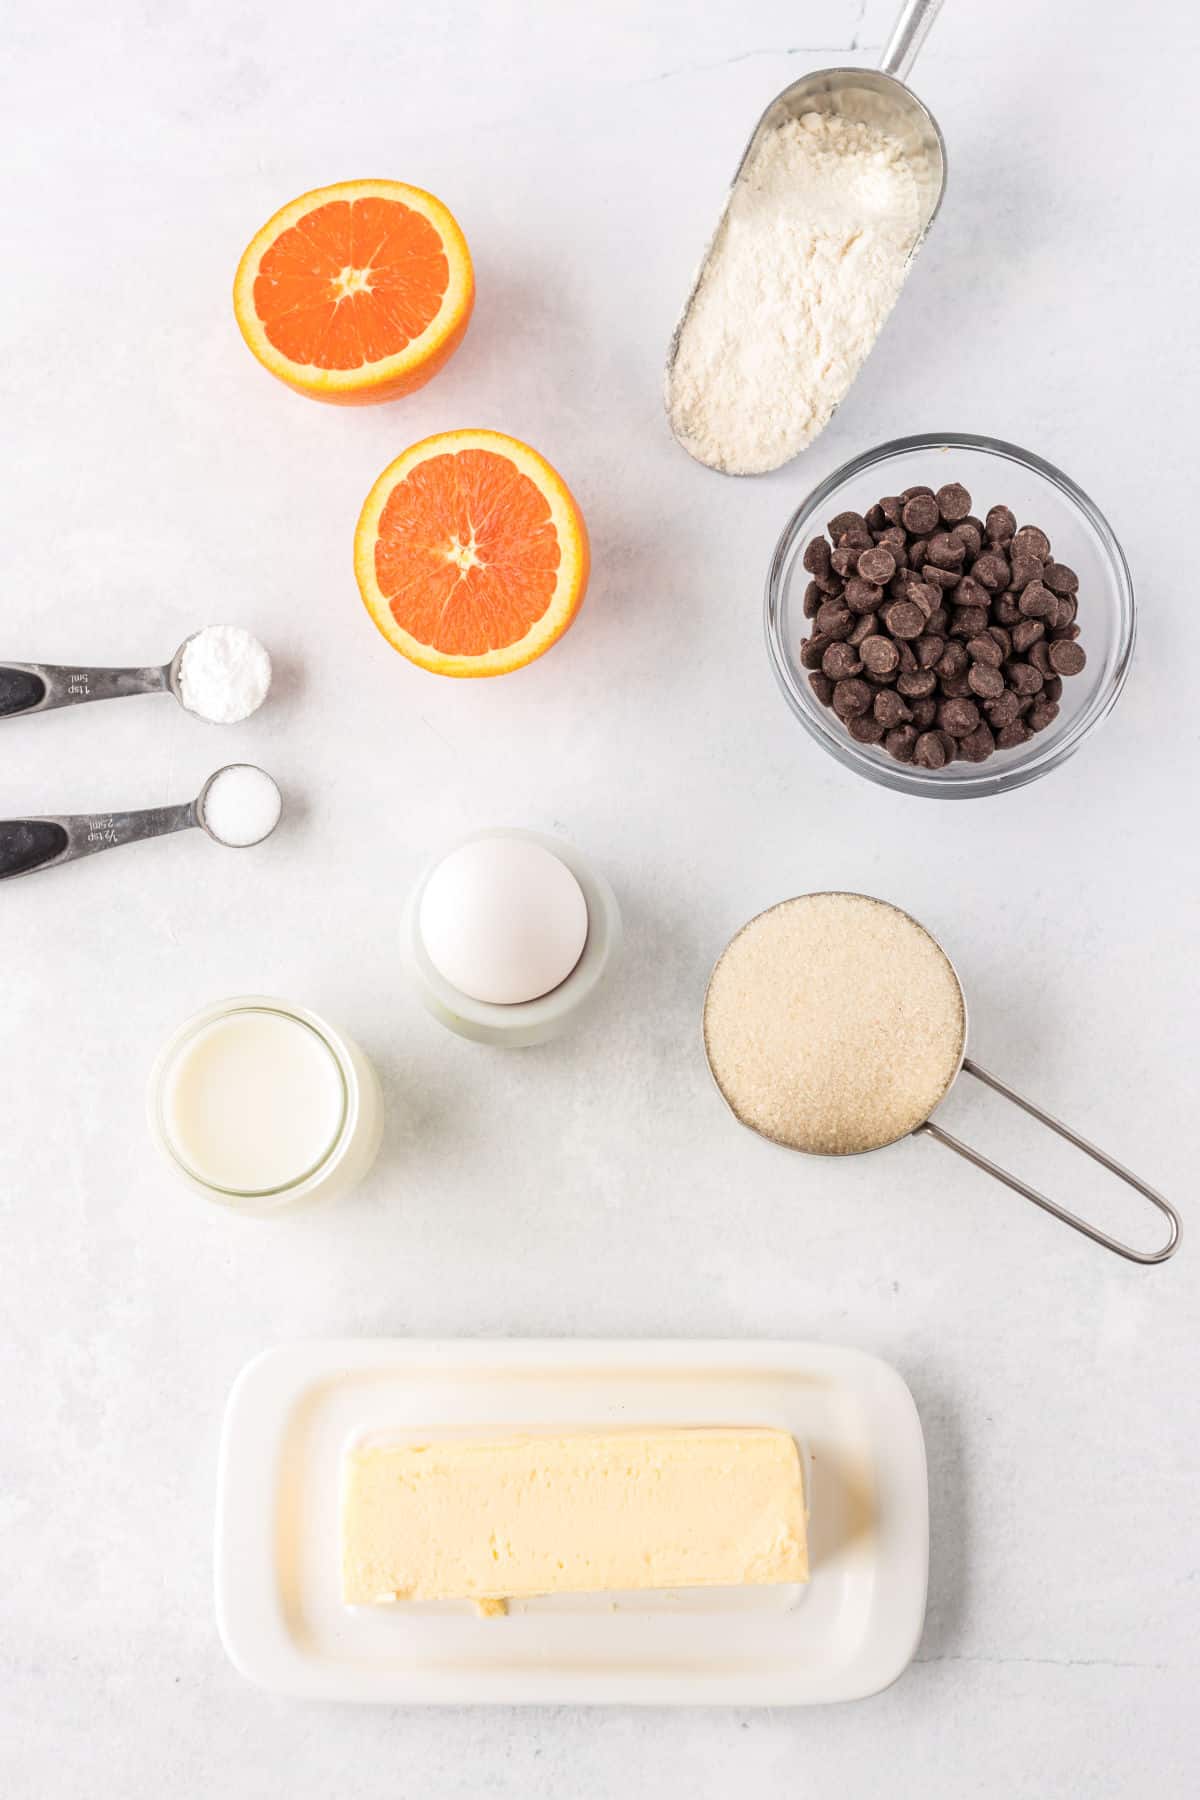 ingredients for orange breakfast muffins, chocolate chips, sugar, flour, milk, egg, oranges, butter